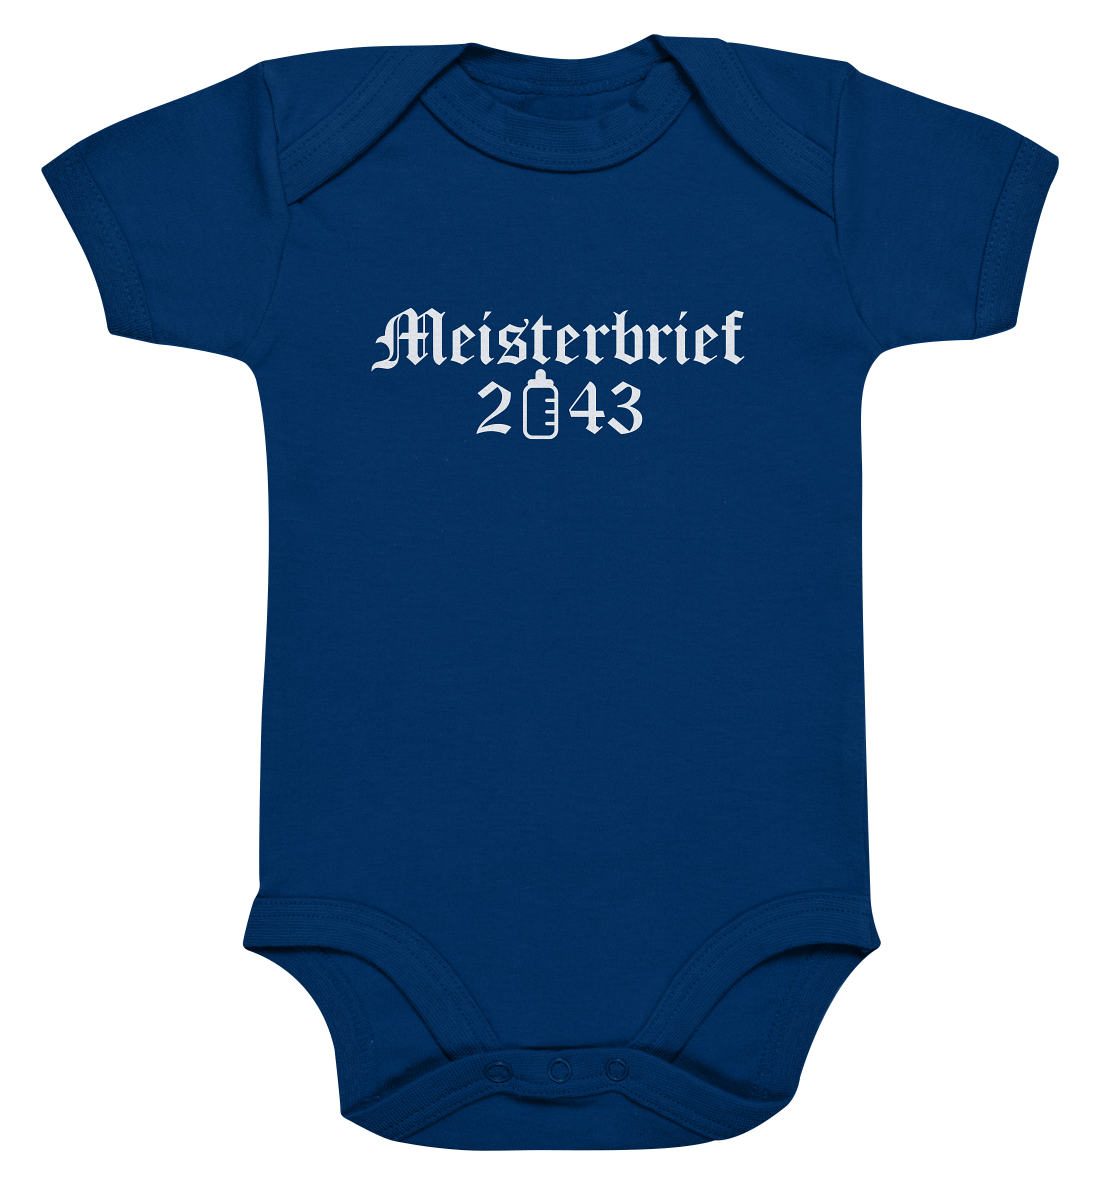 Meisterbrief 2043 / Druck weiß Baby Bodysuite - Baufun Shop